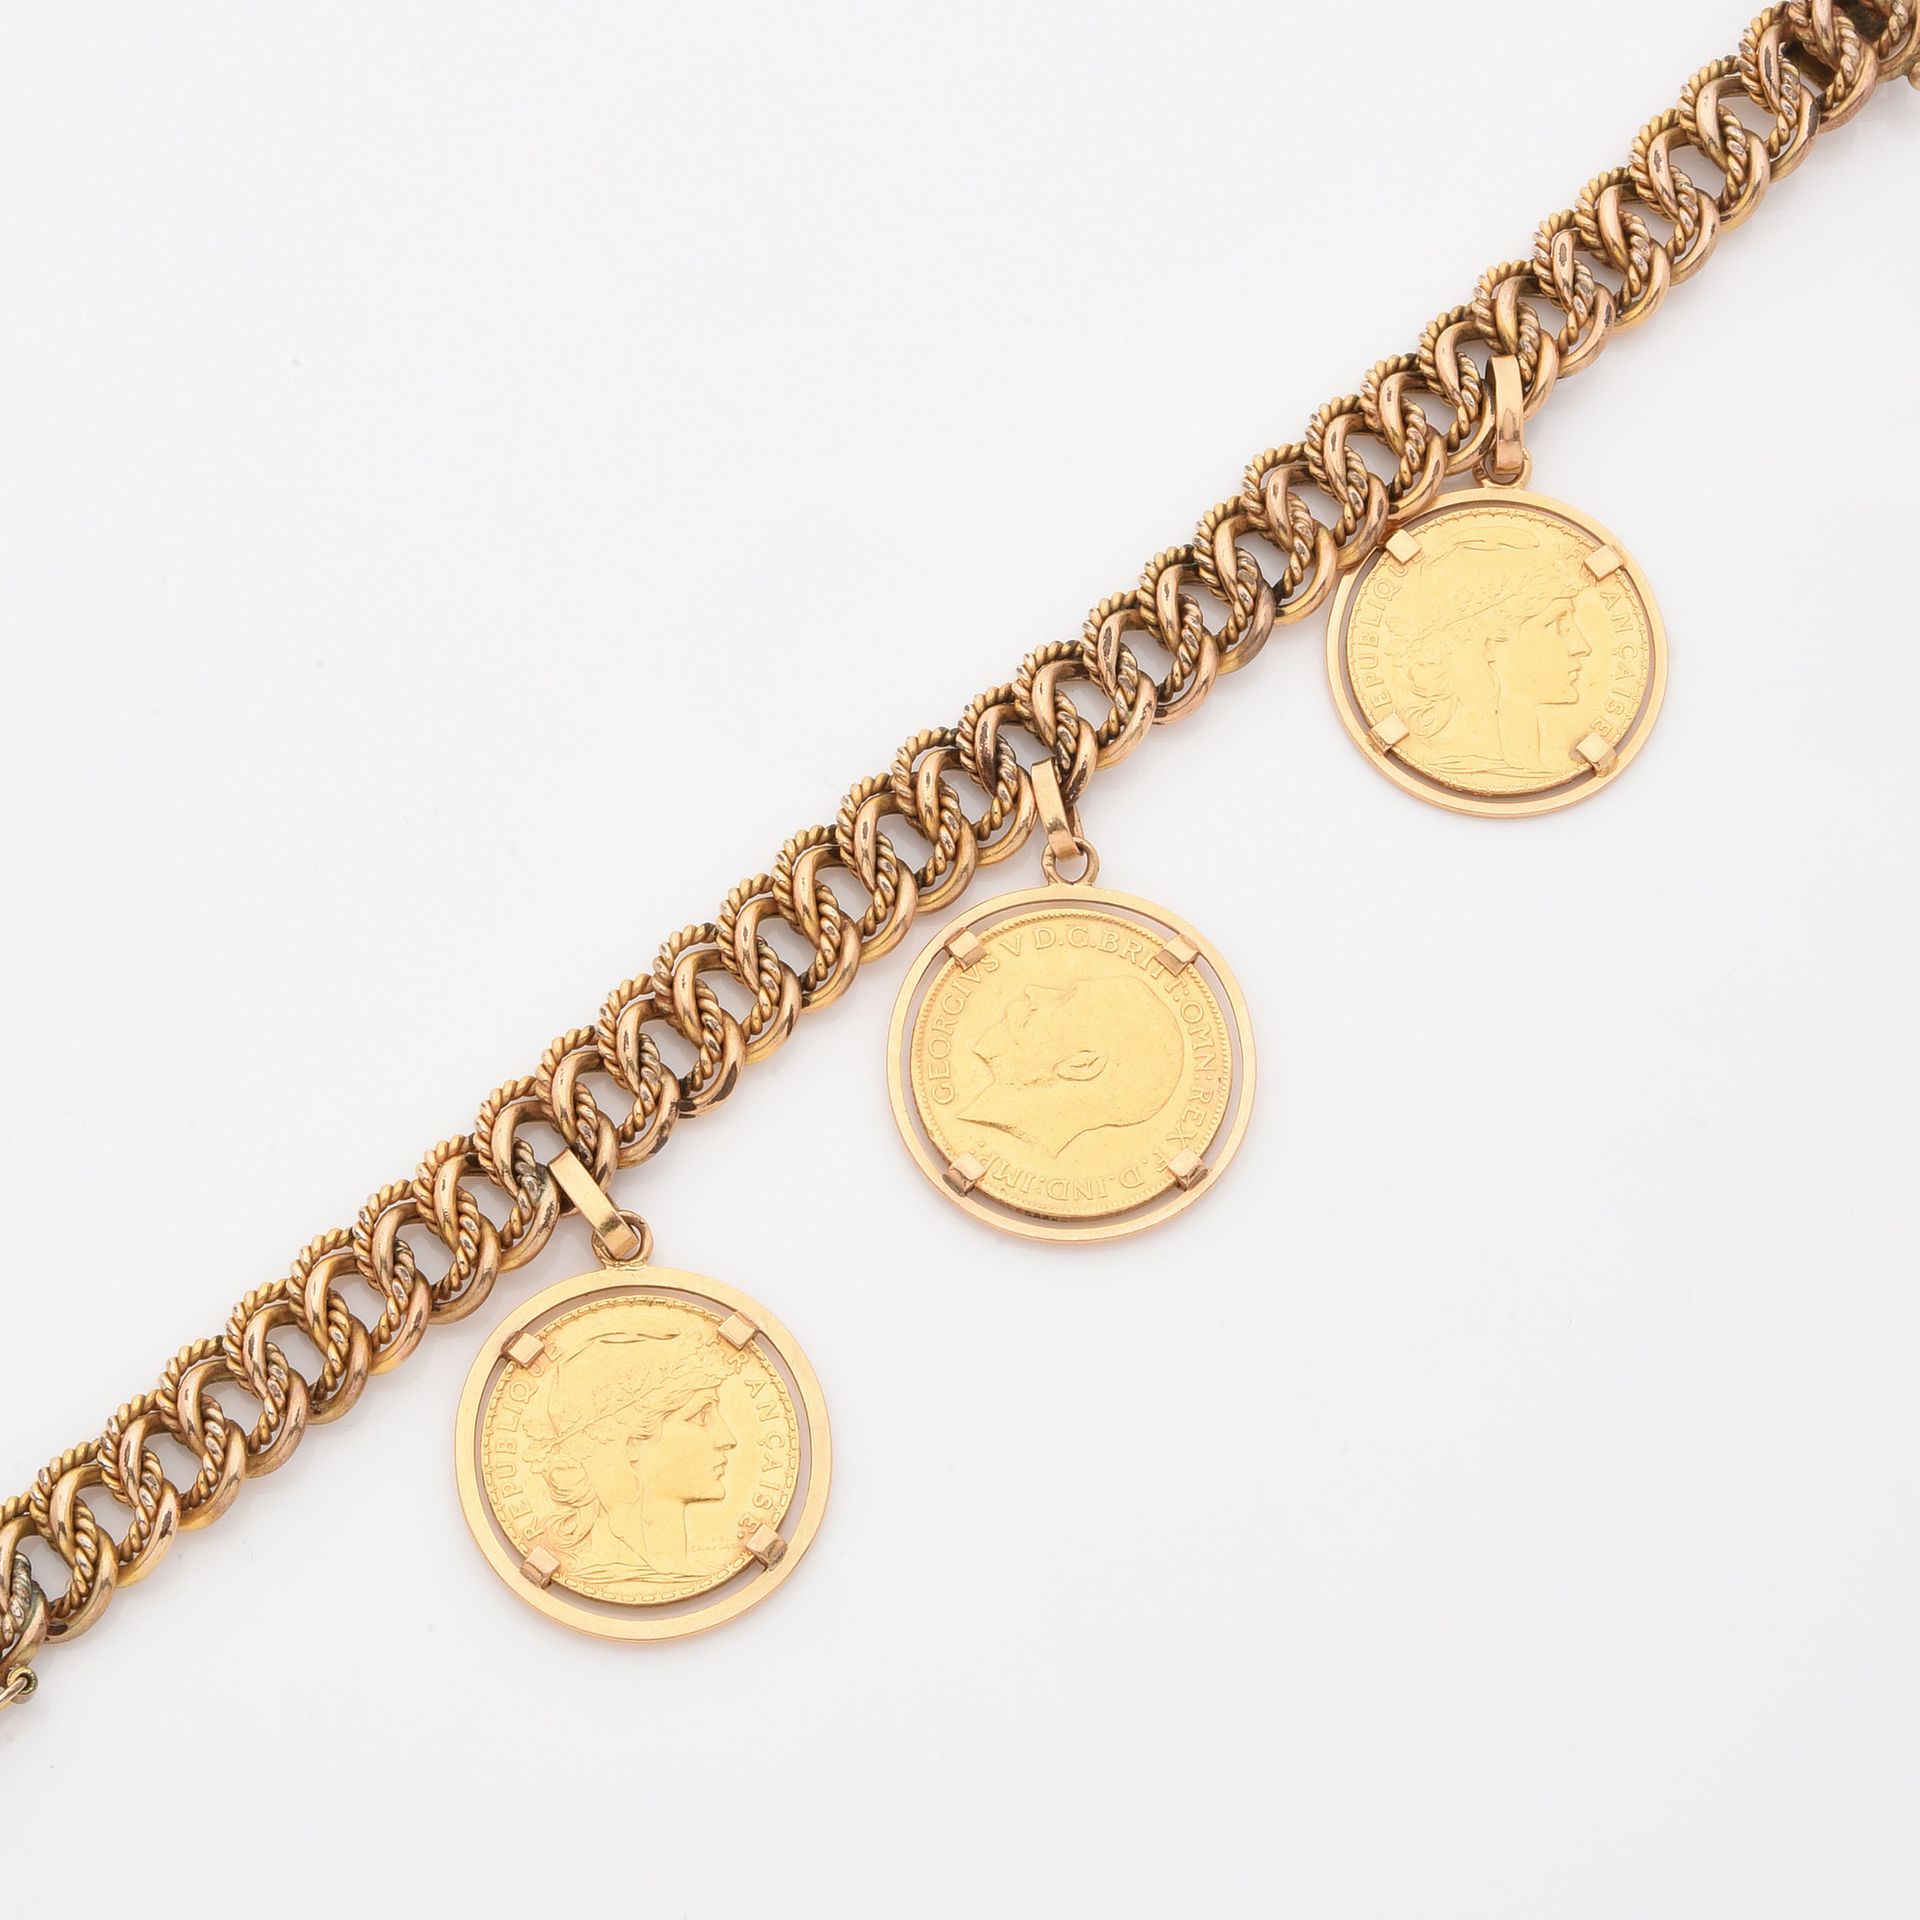 Null BRACCIALE GOURMETTE
In oro giallo, tiene tre monete d'oro giallo (due monet&hellip;